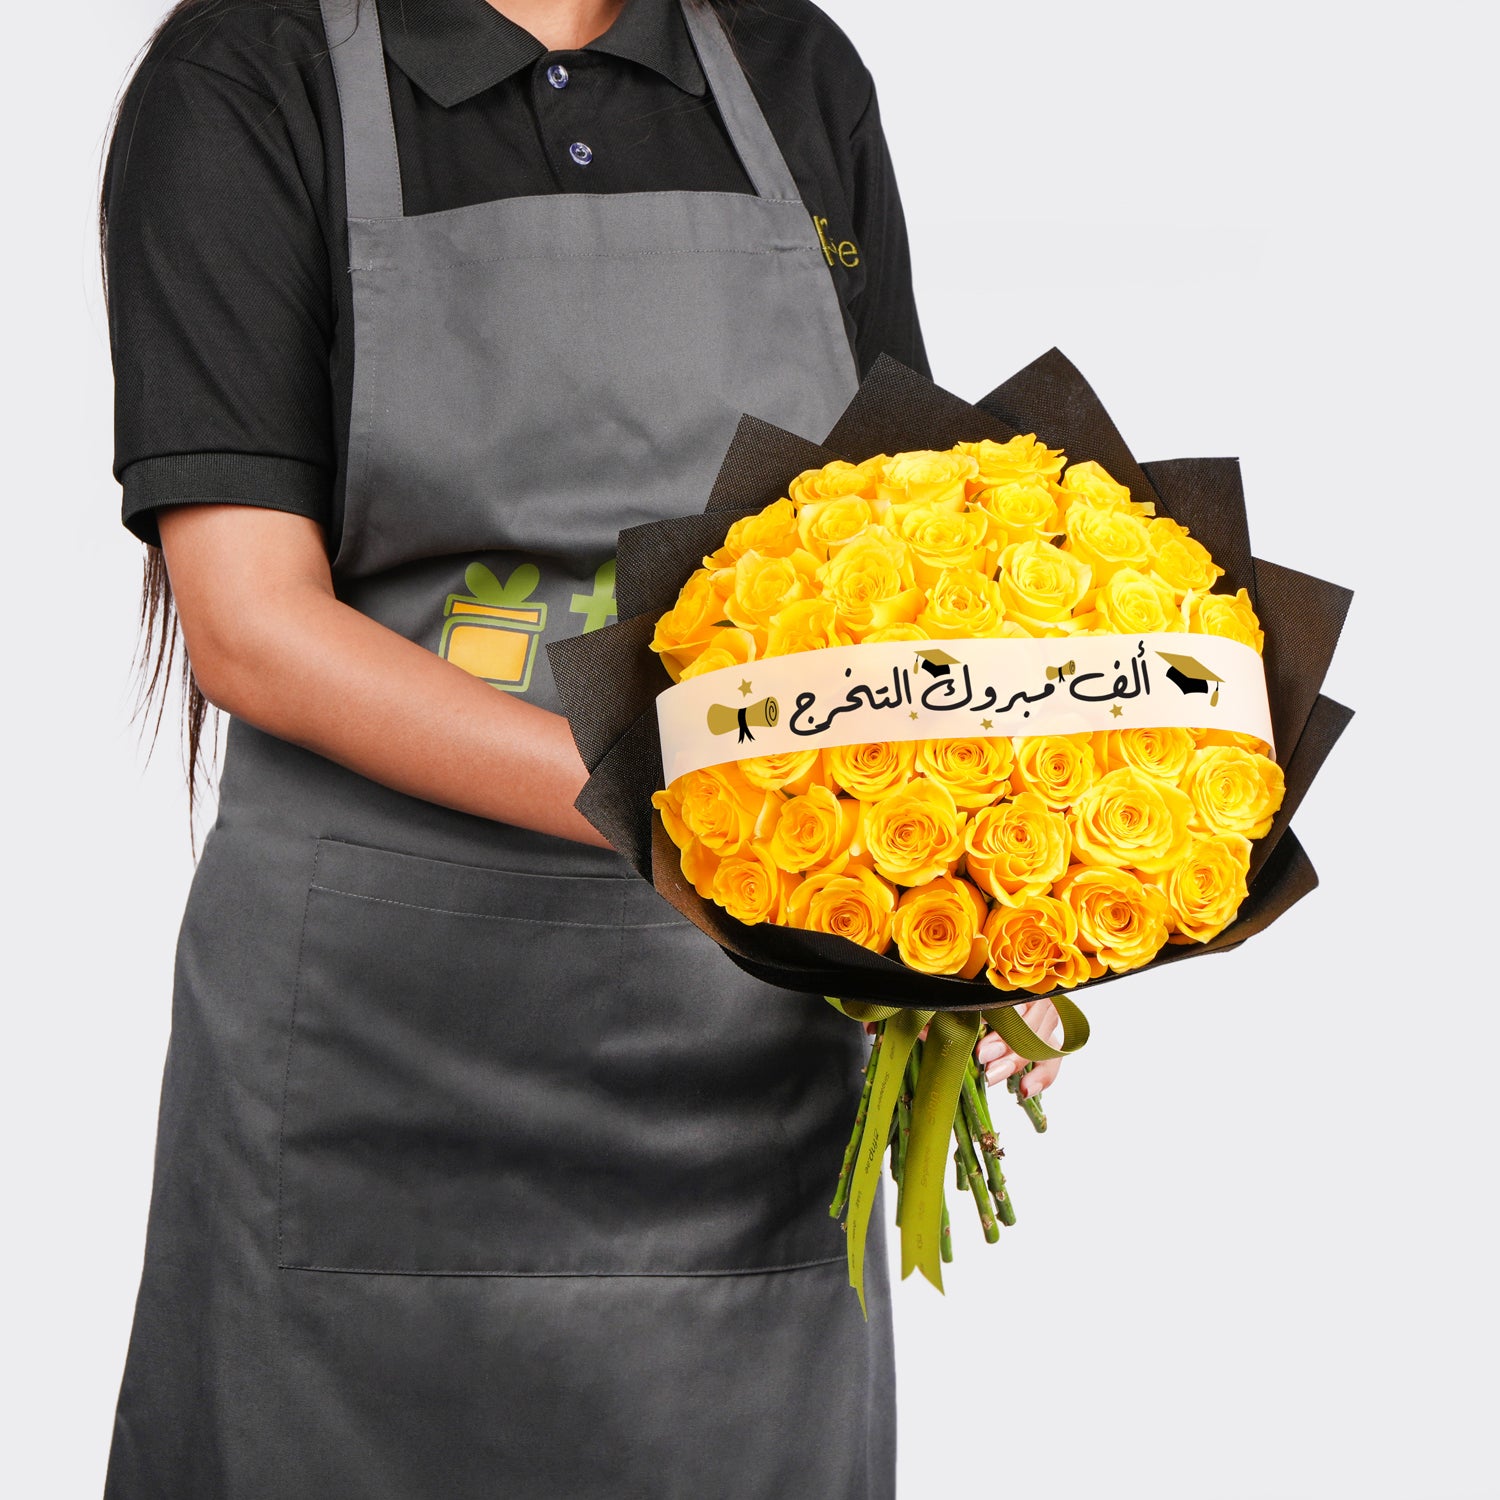 هدية مبروك التخرج ورد باقة 35 وردة صفراء في غلاف أسود